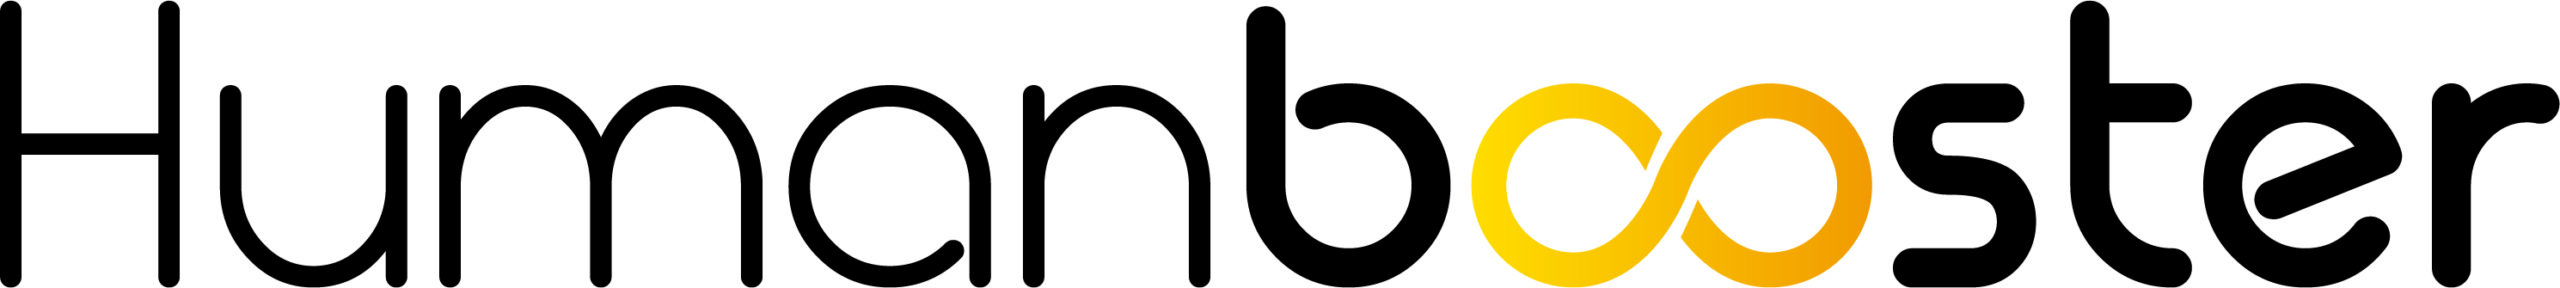 Human Booster, logo membre Bel Air Camp